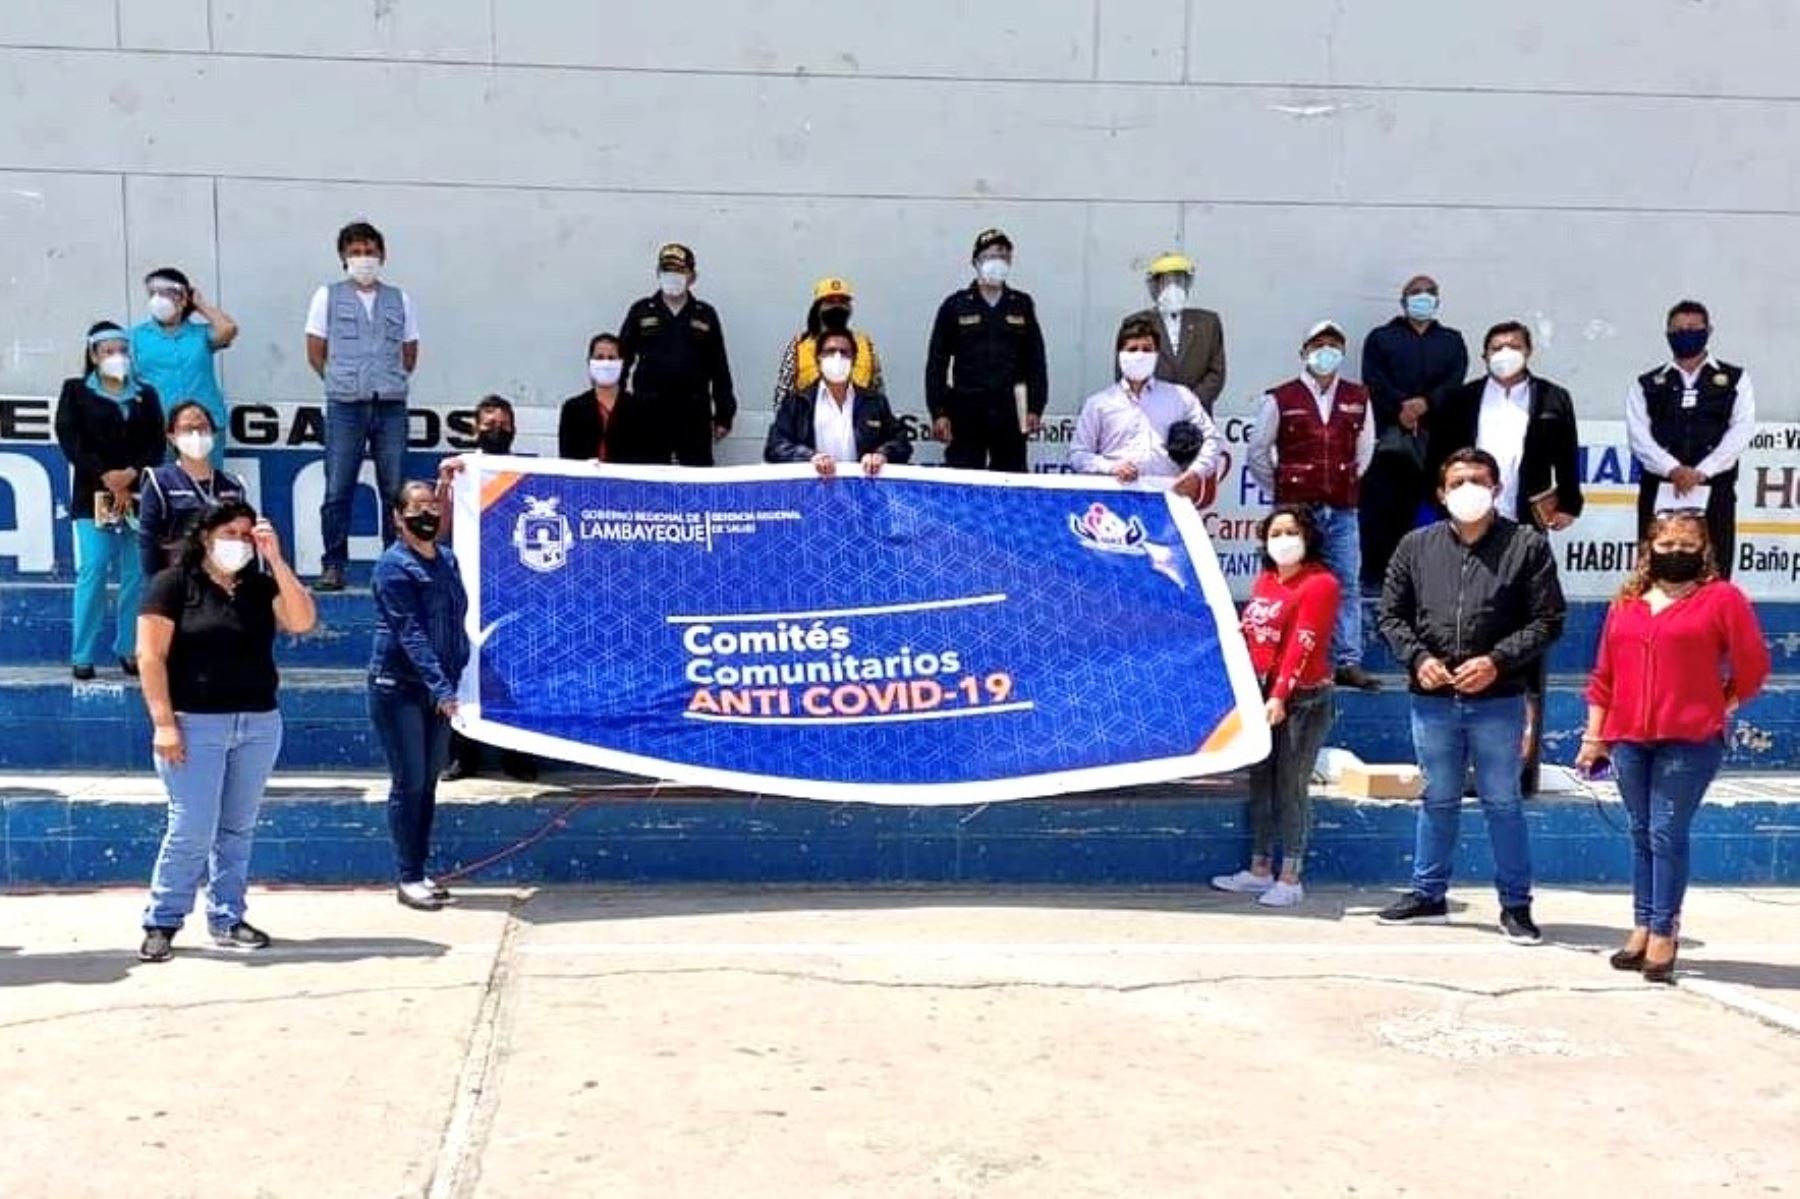 Comités comunitarios apoyarán la lucha frontal contra la pandemia de covid-19 en la región Lambayeque. ANDINA/Difusión